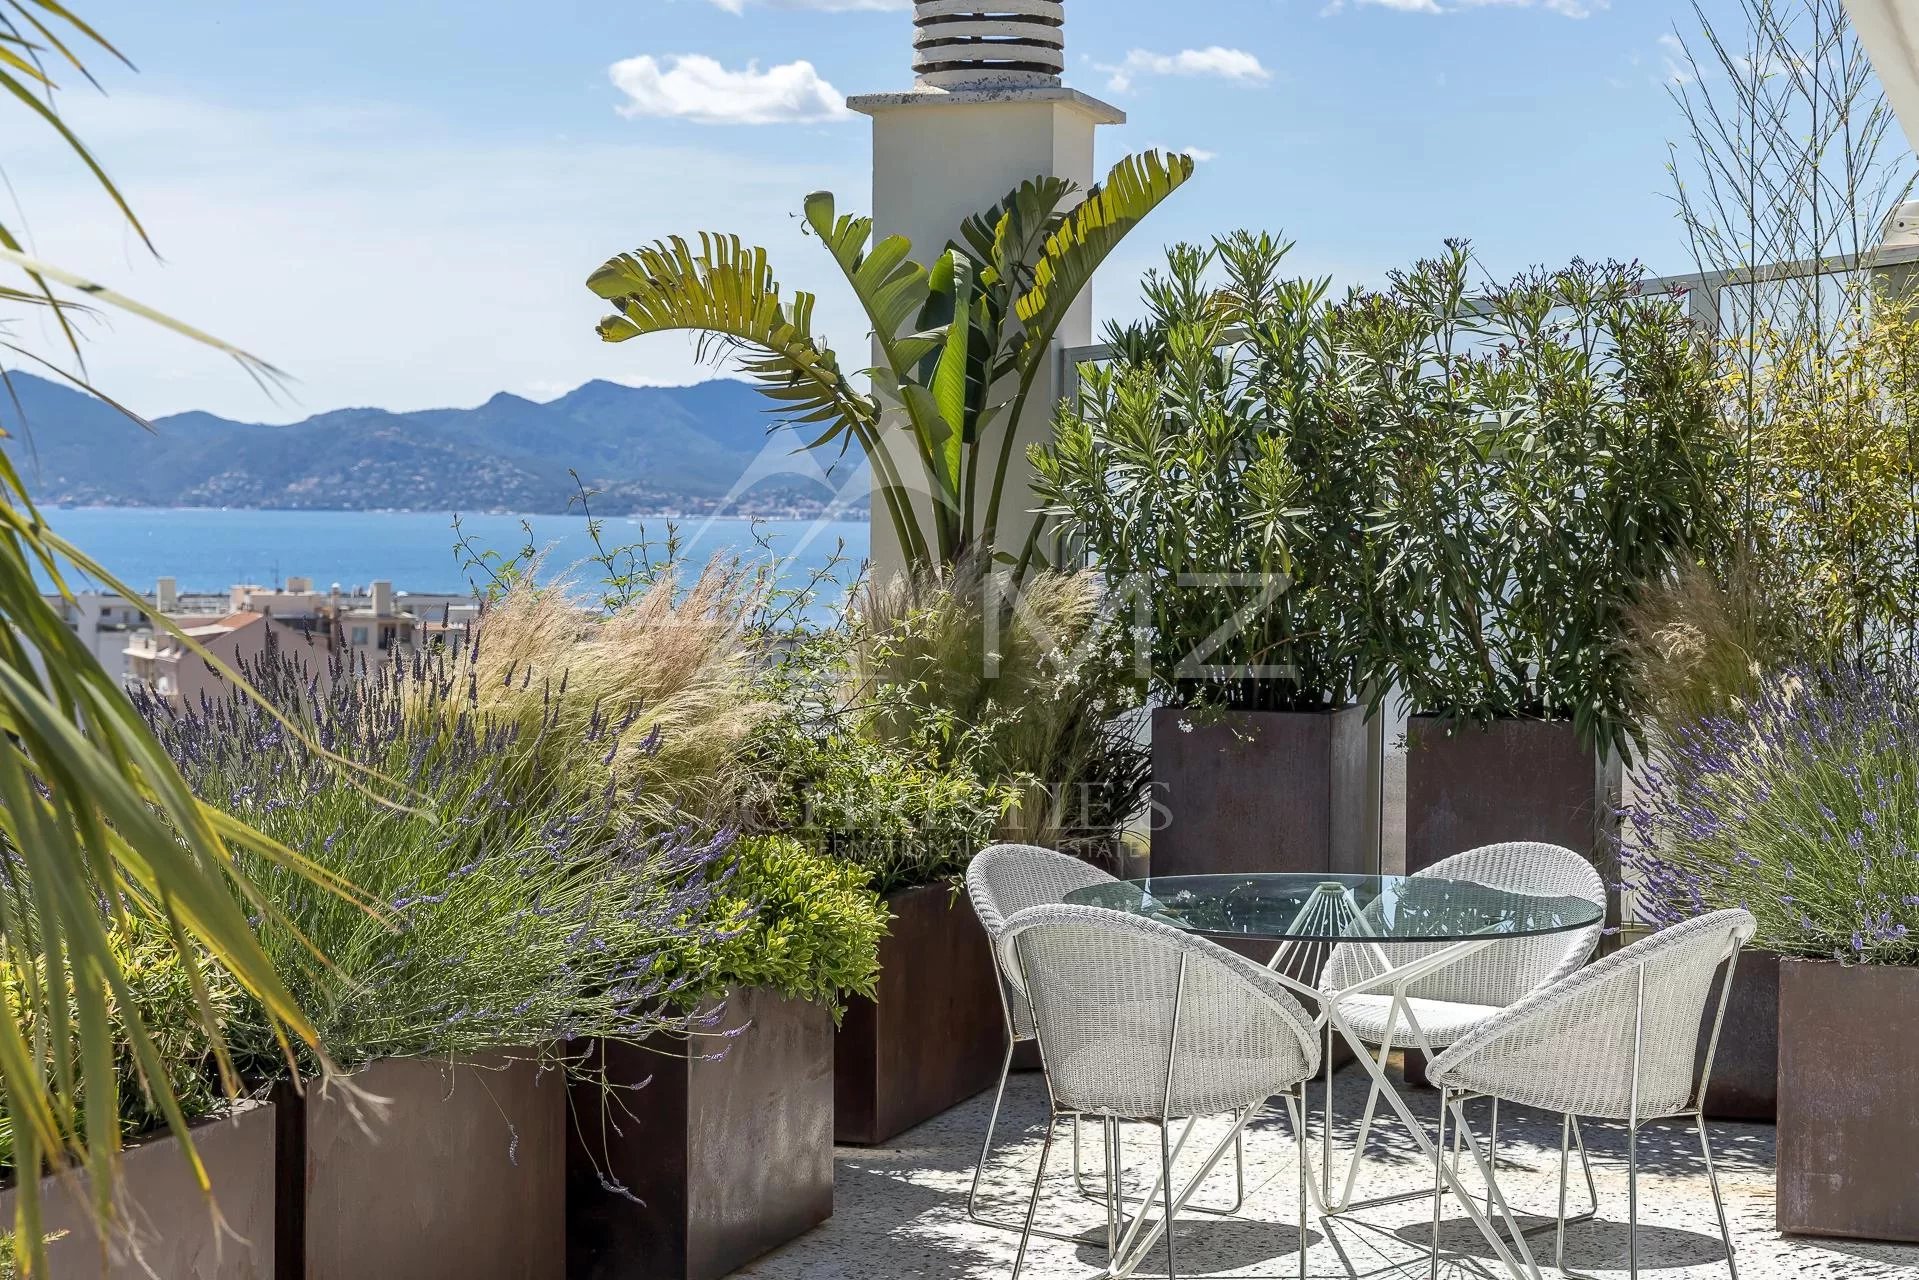 CANNES PALM BEACH - Cannes: Exceptional 3BR Penthouse duplex